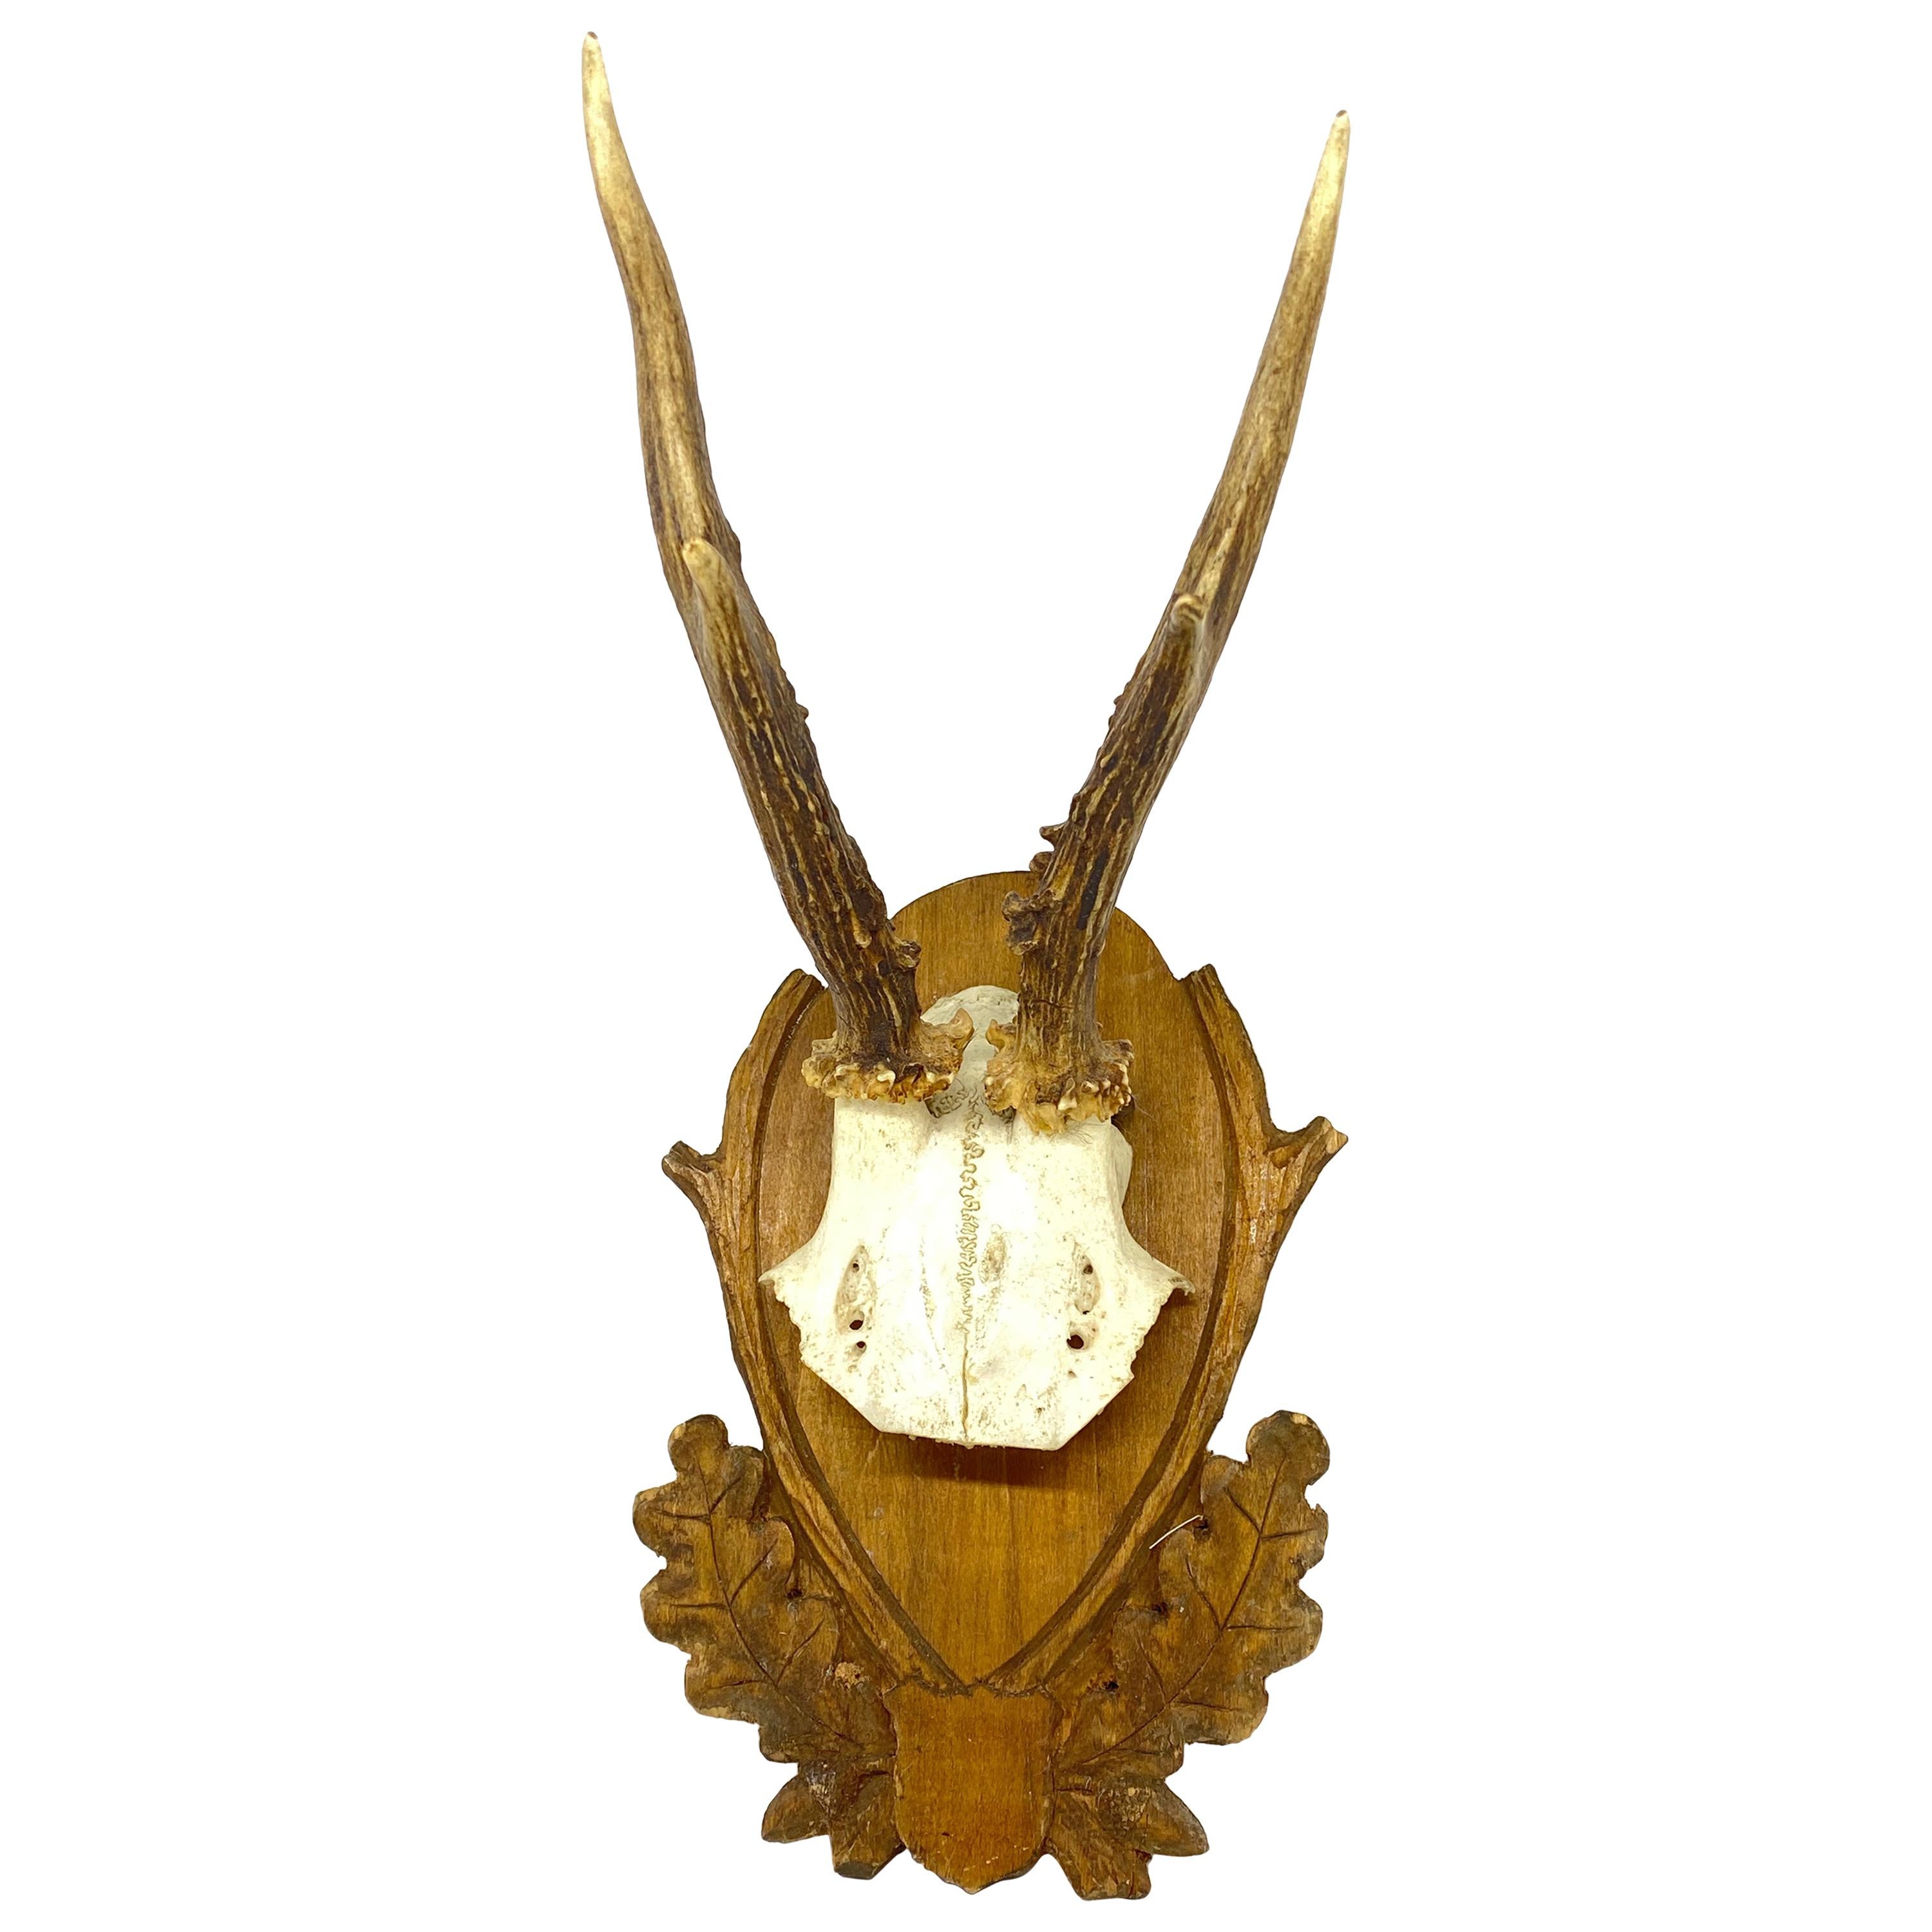 Vintage Black Forest Deer Antler Trophy on Wood Carved Plaque, German, 1930s